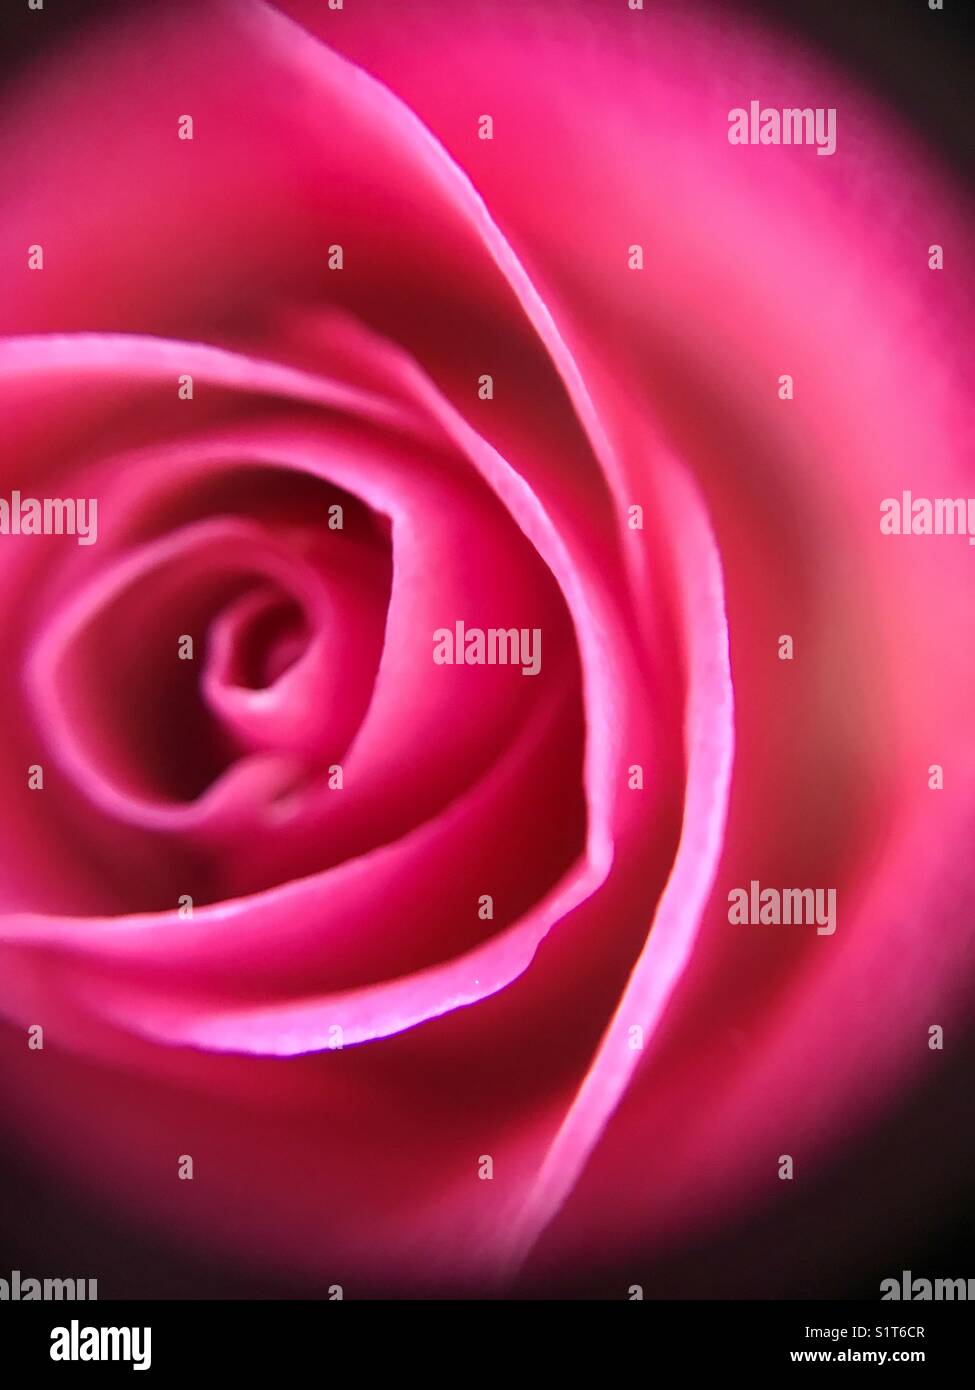 Hot Pink Rose Close Up Stock Photo Alamy